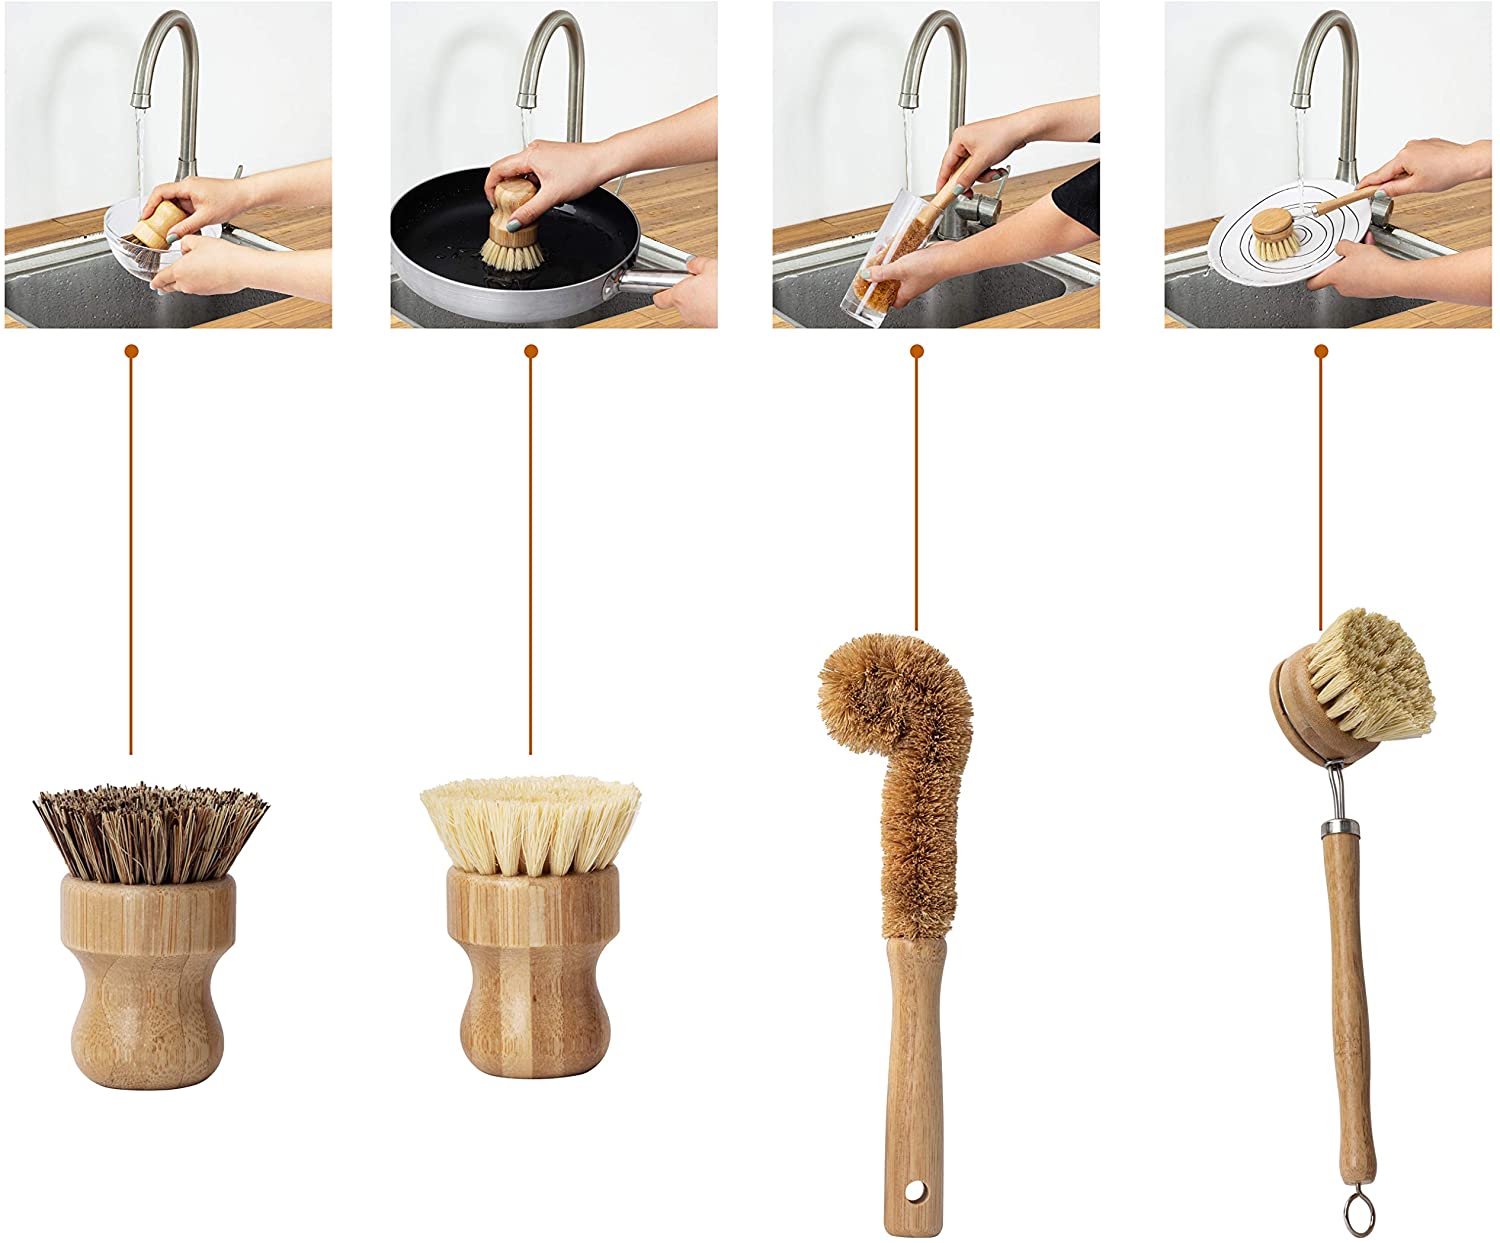 Natural Kitchen Scrub Brush Set